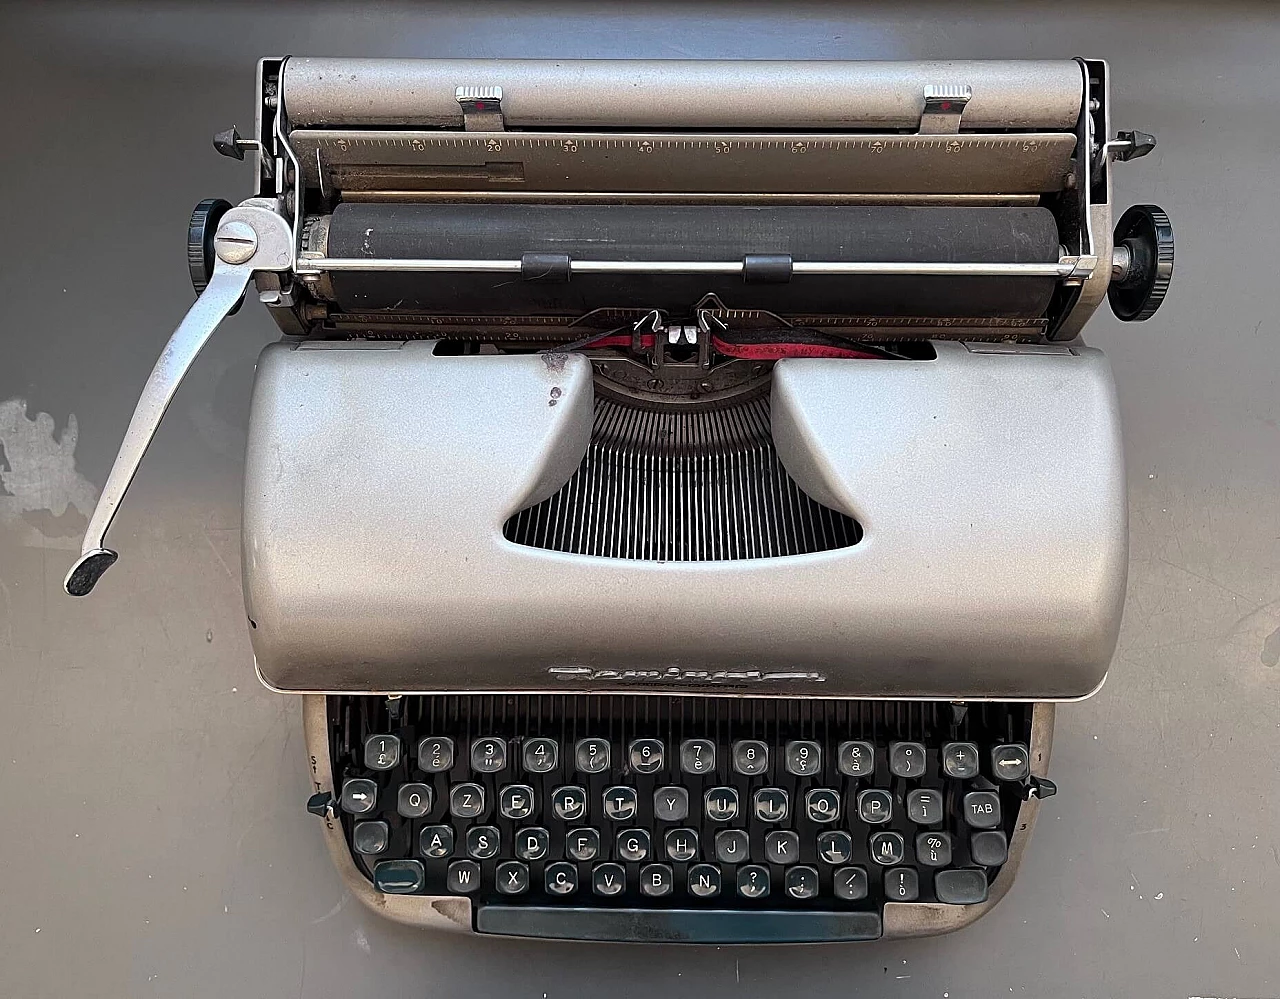 Remington Quiet-Riter typewriter, 1960s 1